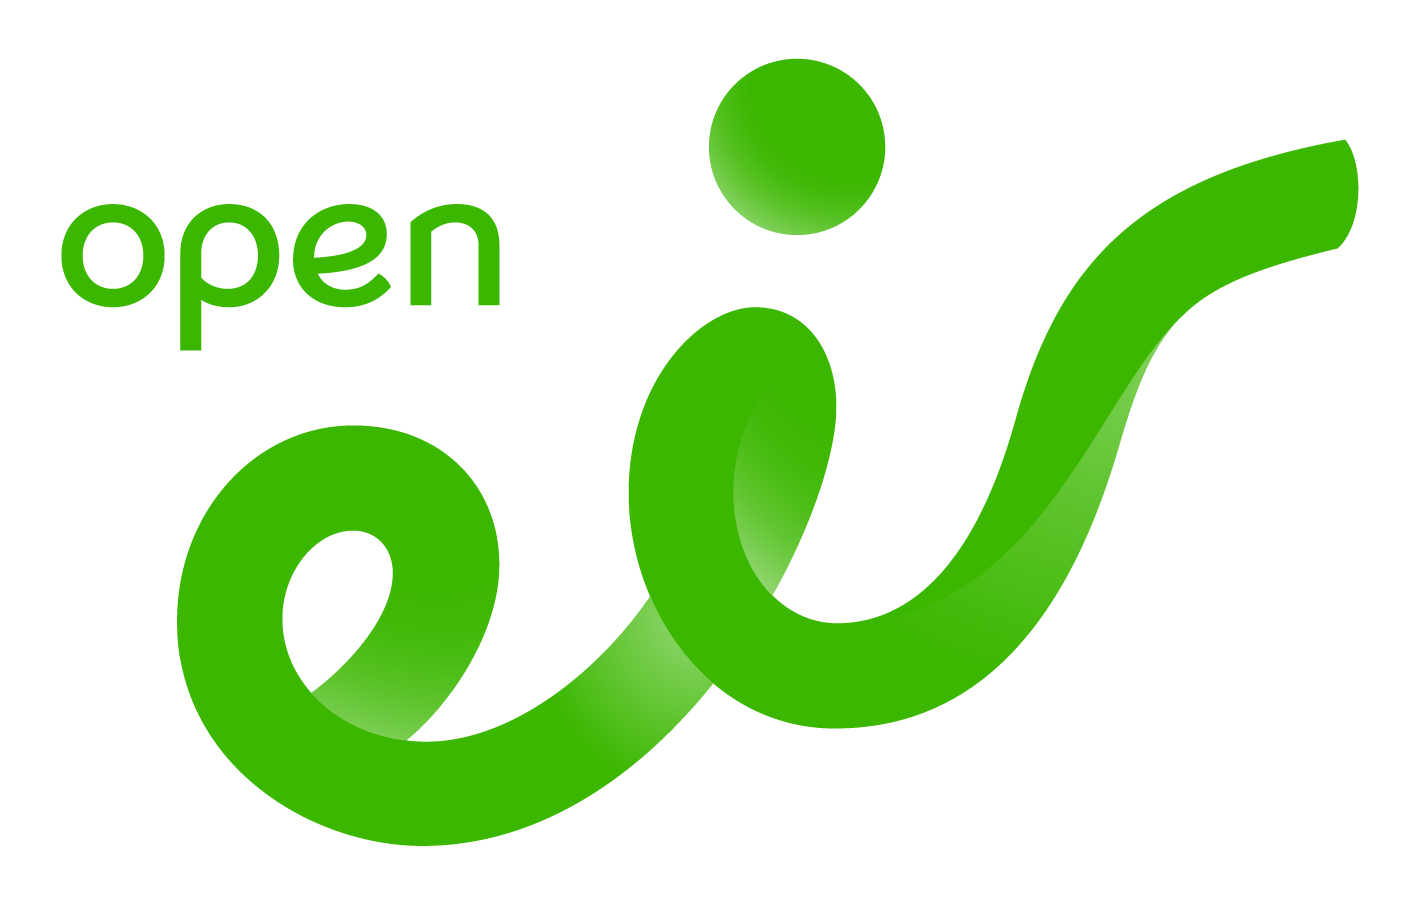 open eir logo green RGB